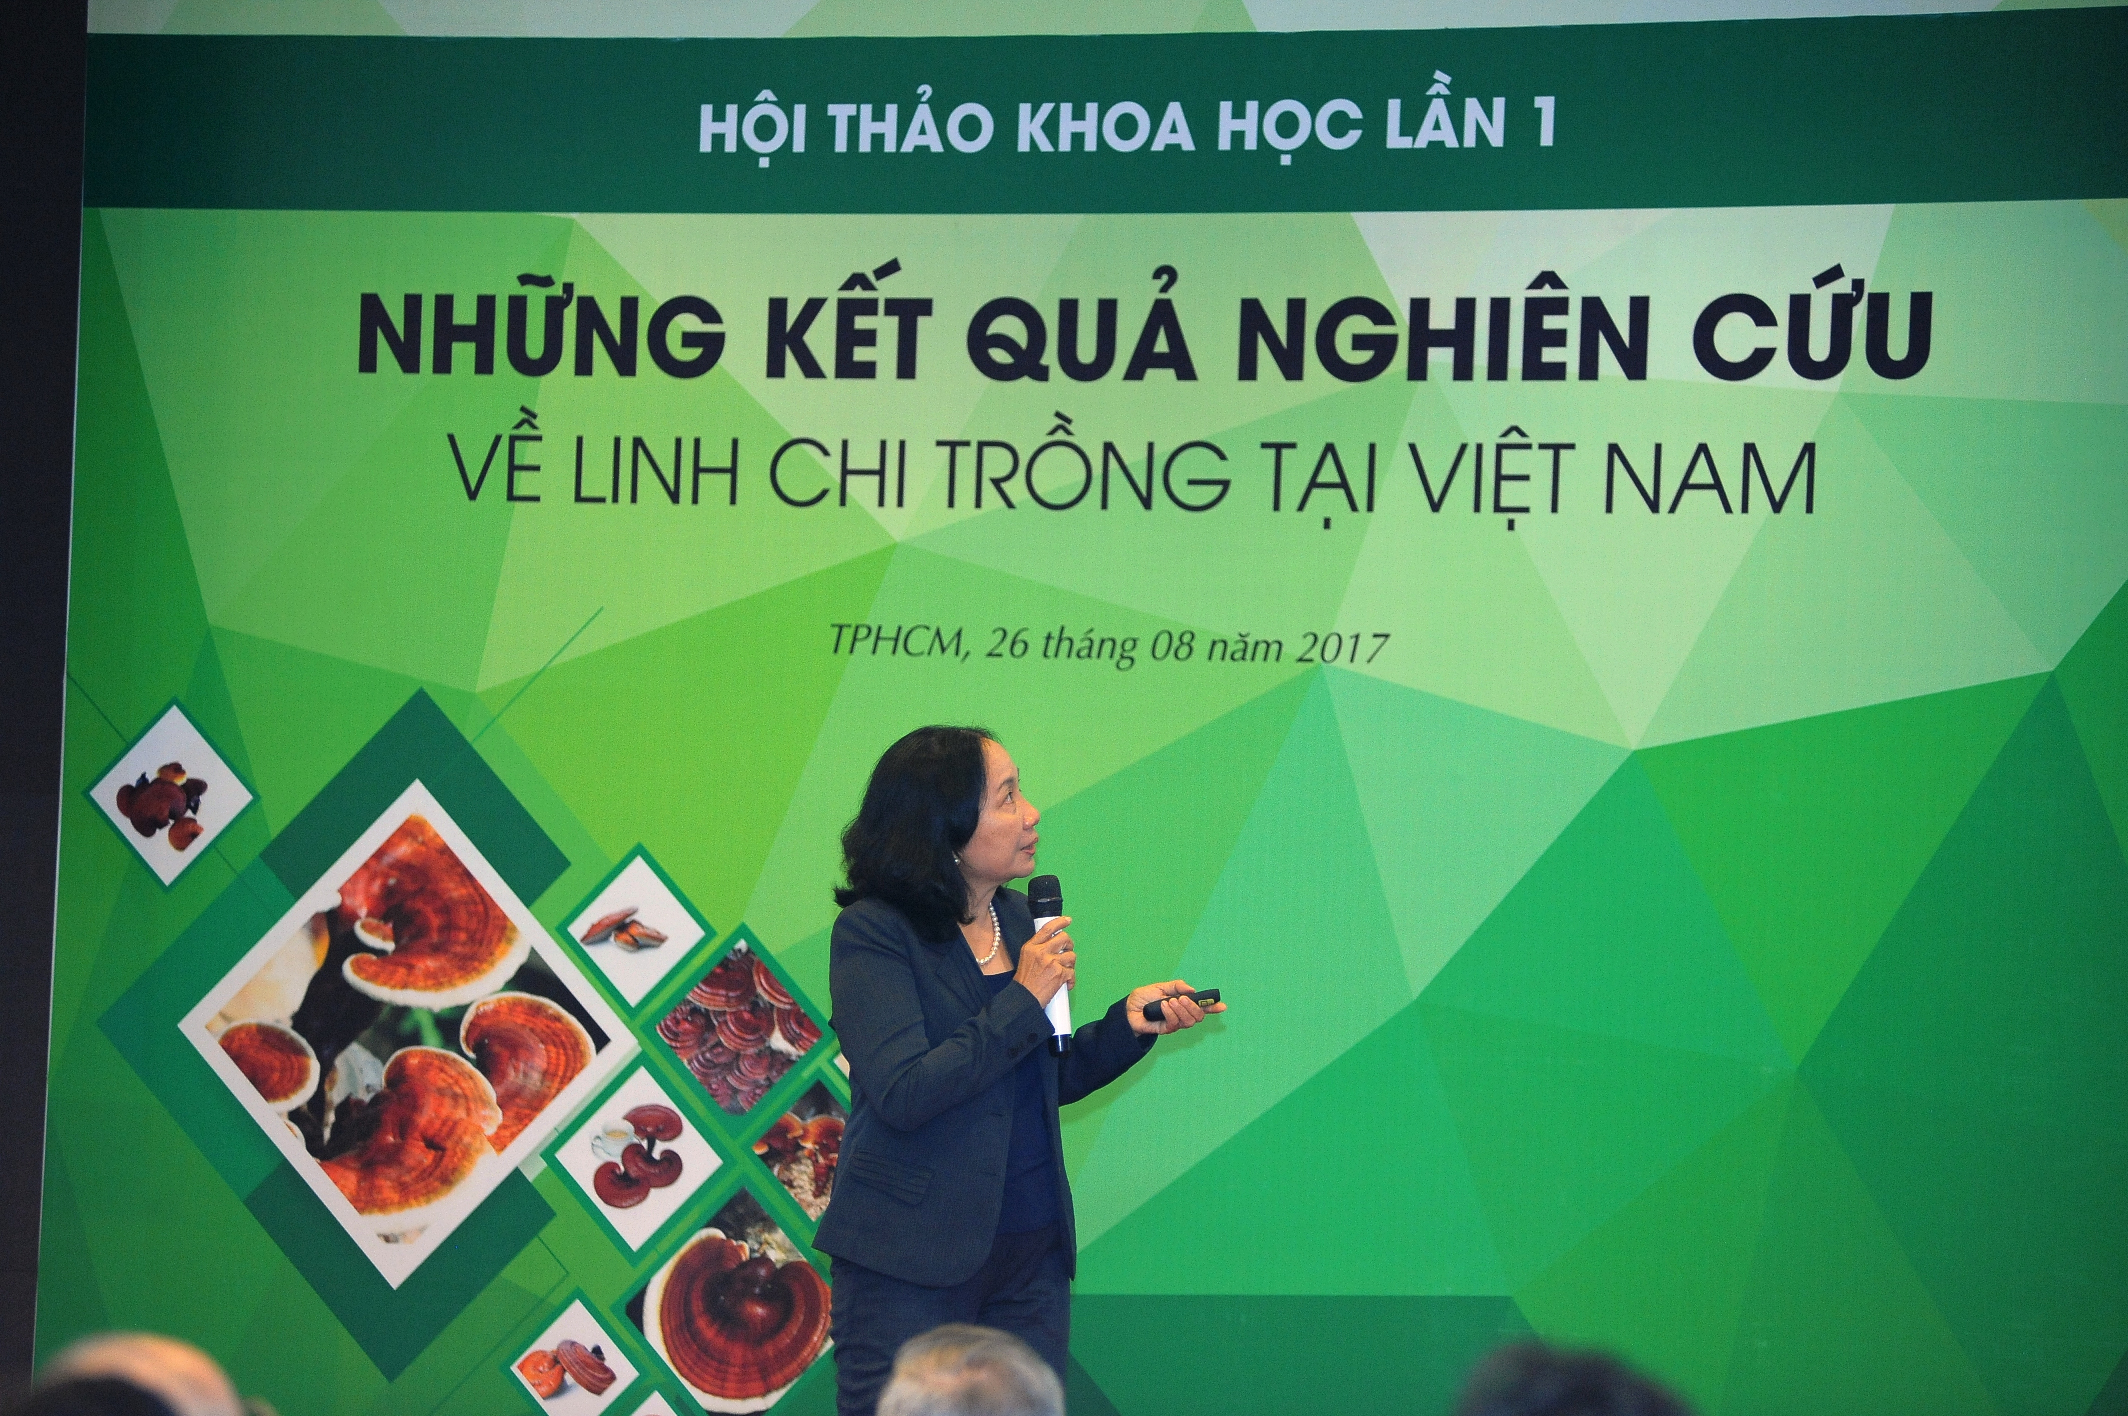 PGS TS Nguyễn Thị Thu Hương trình bày báo cáo